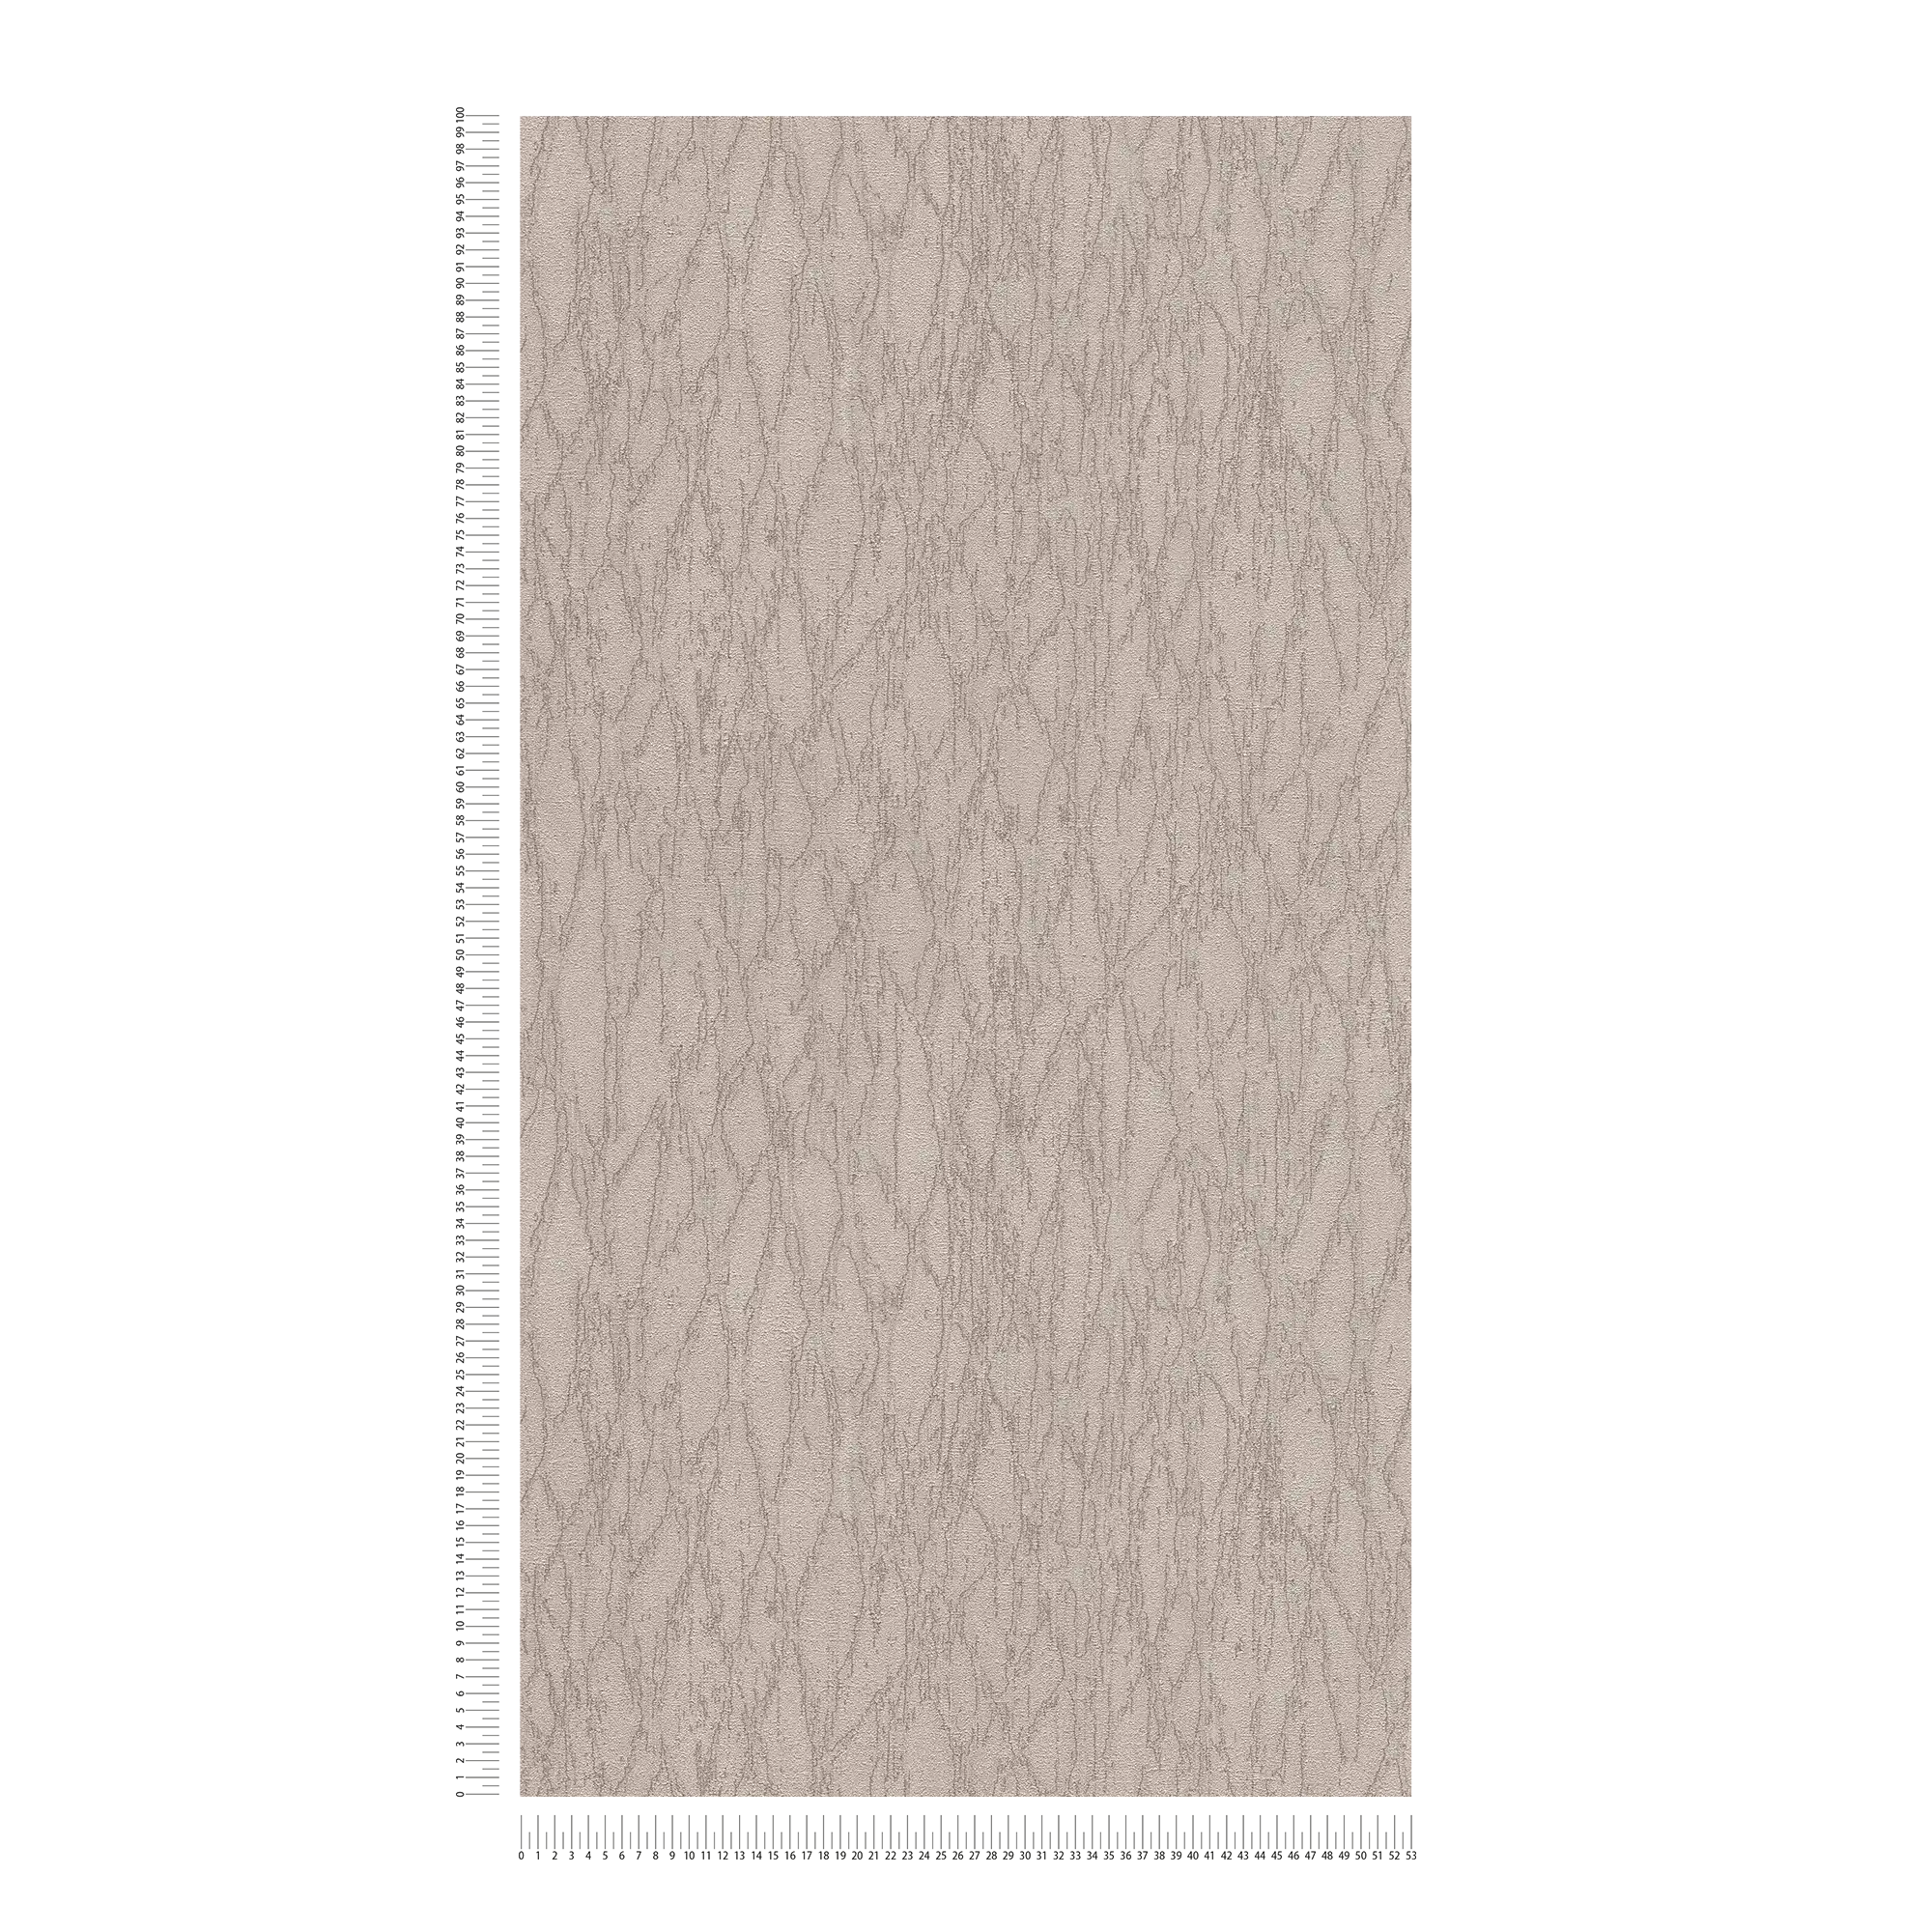             papier peint en papier intissé aspect plâtre avec accents et motifs abstraits - gris, beige, argenté
        